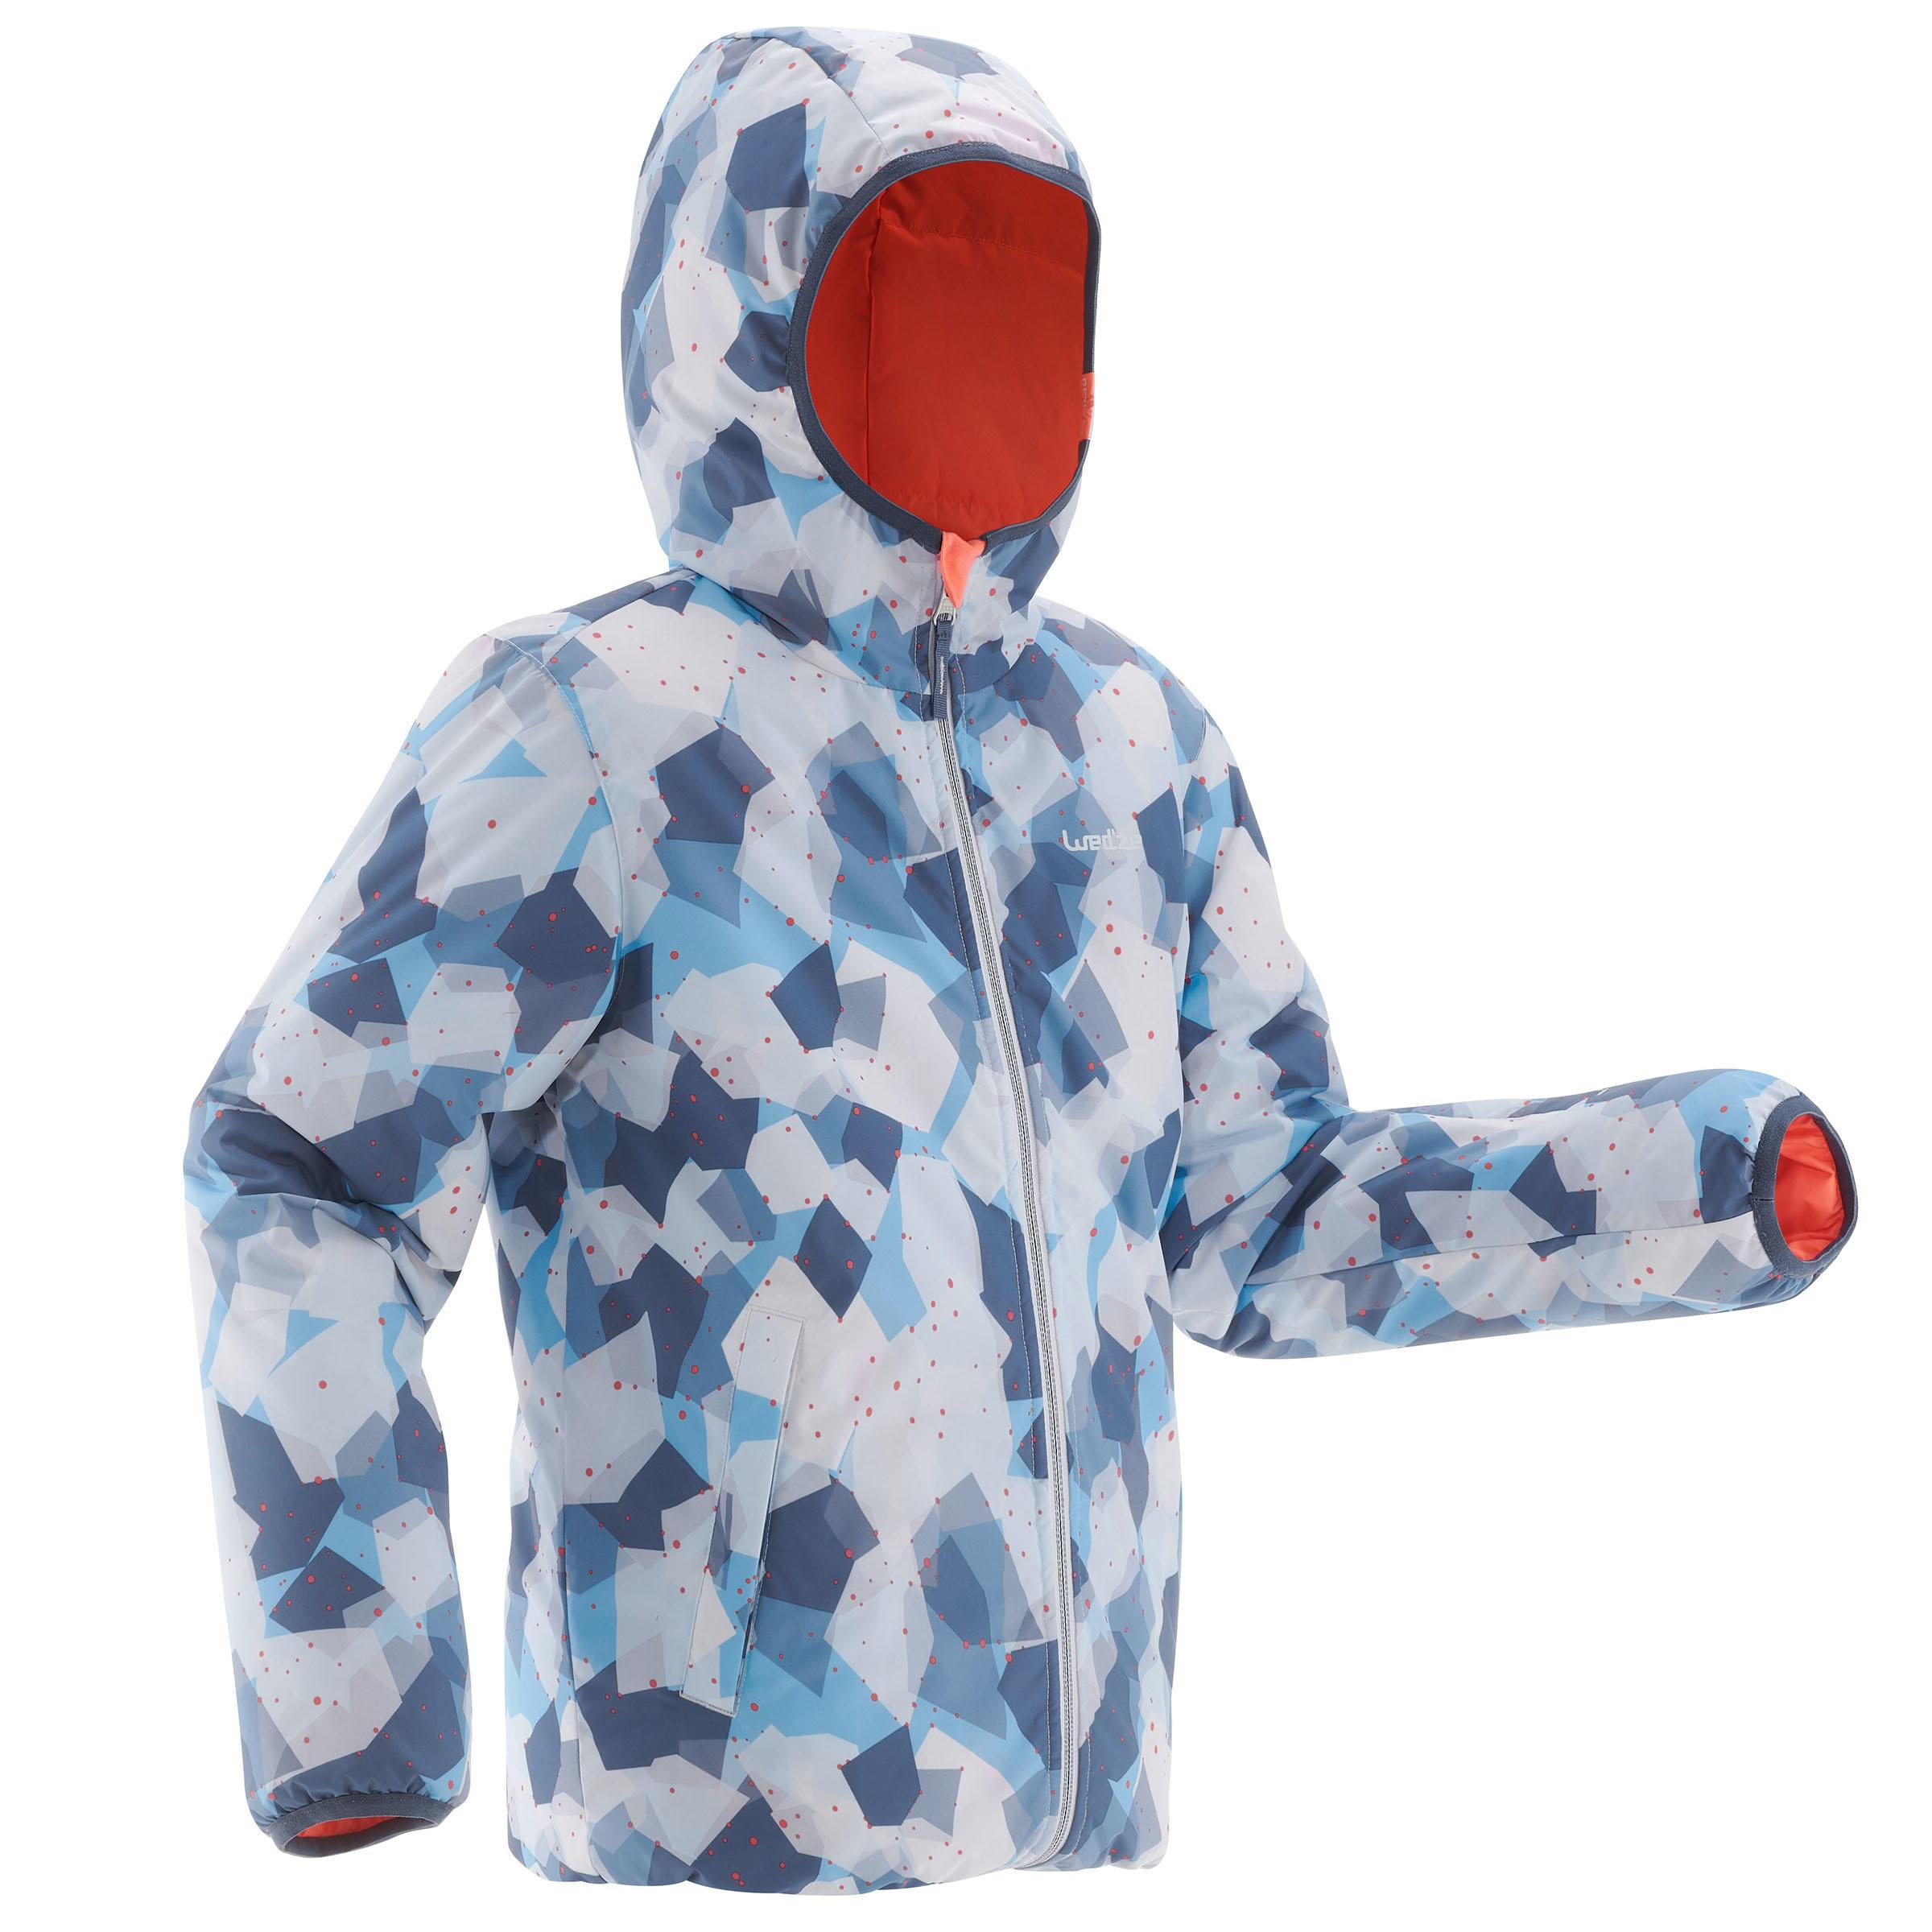 [ด่วน!! โปรโมชั่นมีจำนวนจำกัด] เสื้อแจ็คเก็ตเด็กใส่ได้สองด้านสำหรับใส่เล่นสกีเพื่อความอบอุ่นรุ่น SKI-P JKT 100 (สี CORAL/ฟ้า) สำหรับ สกี เลื่อน